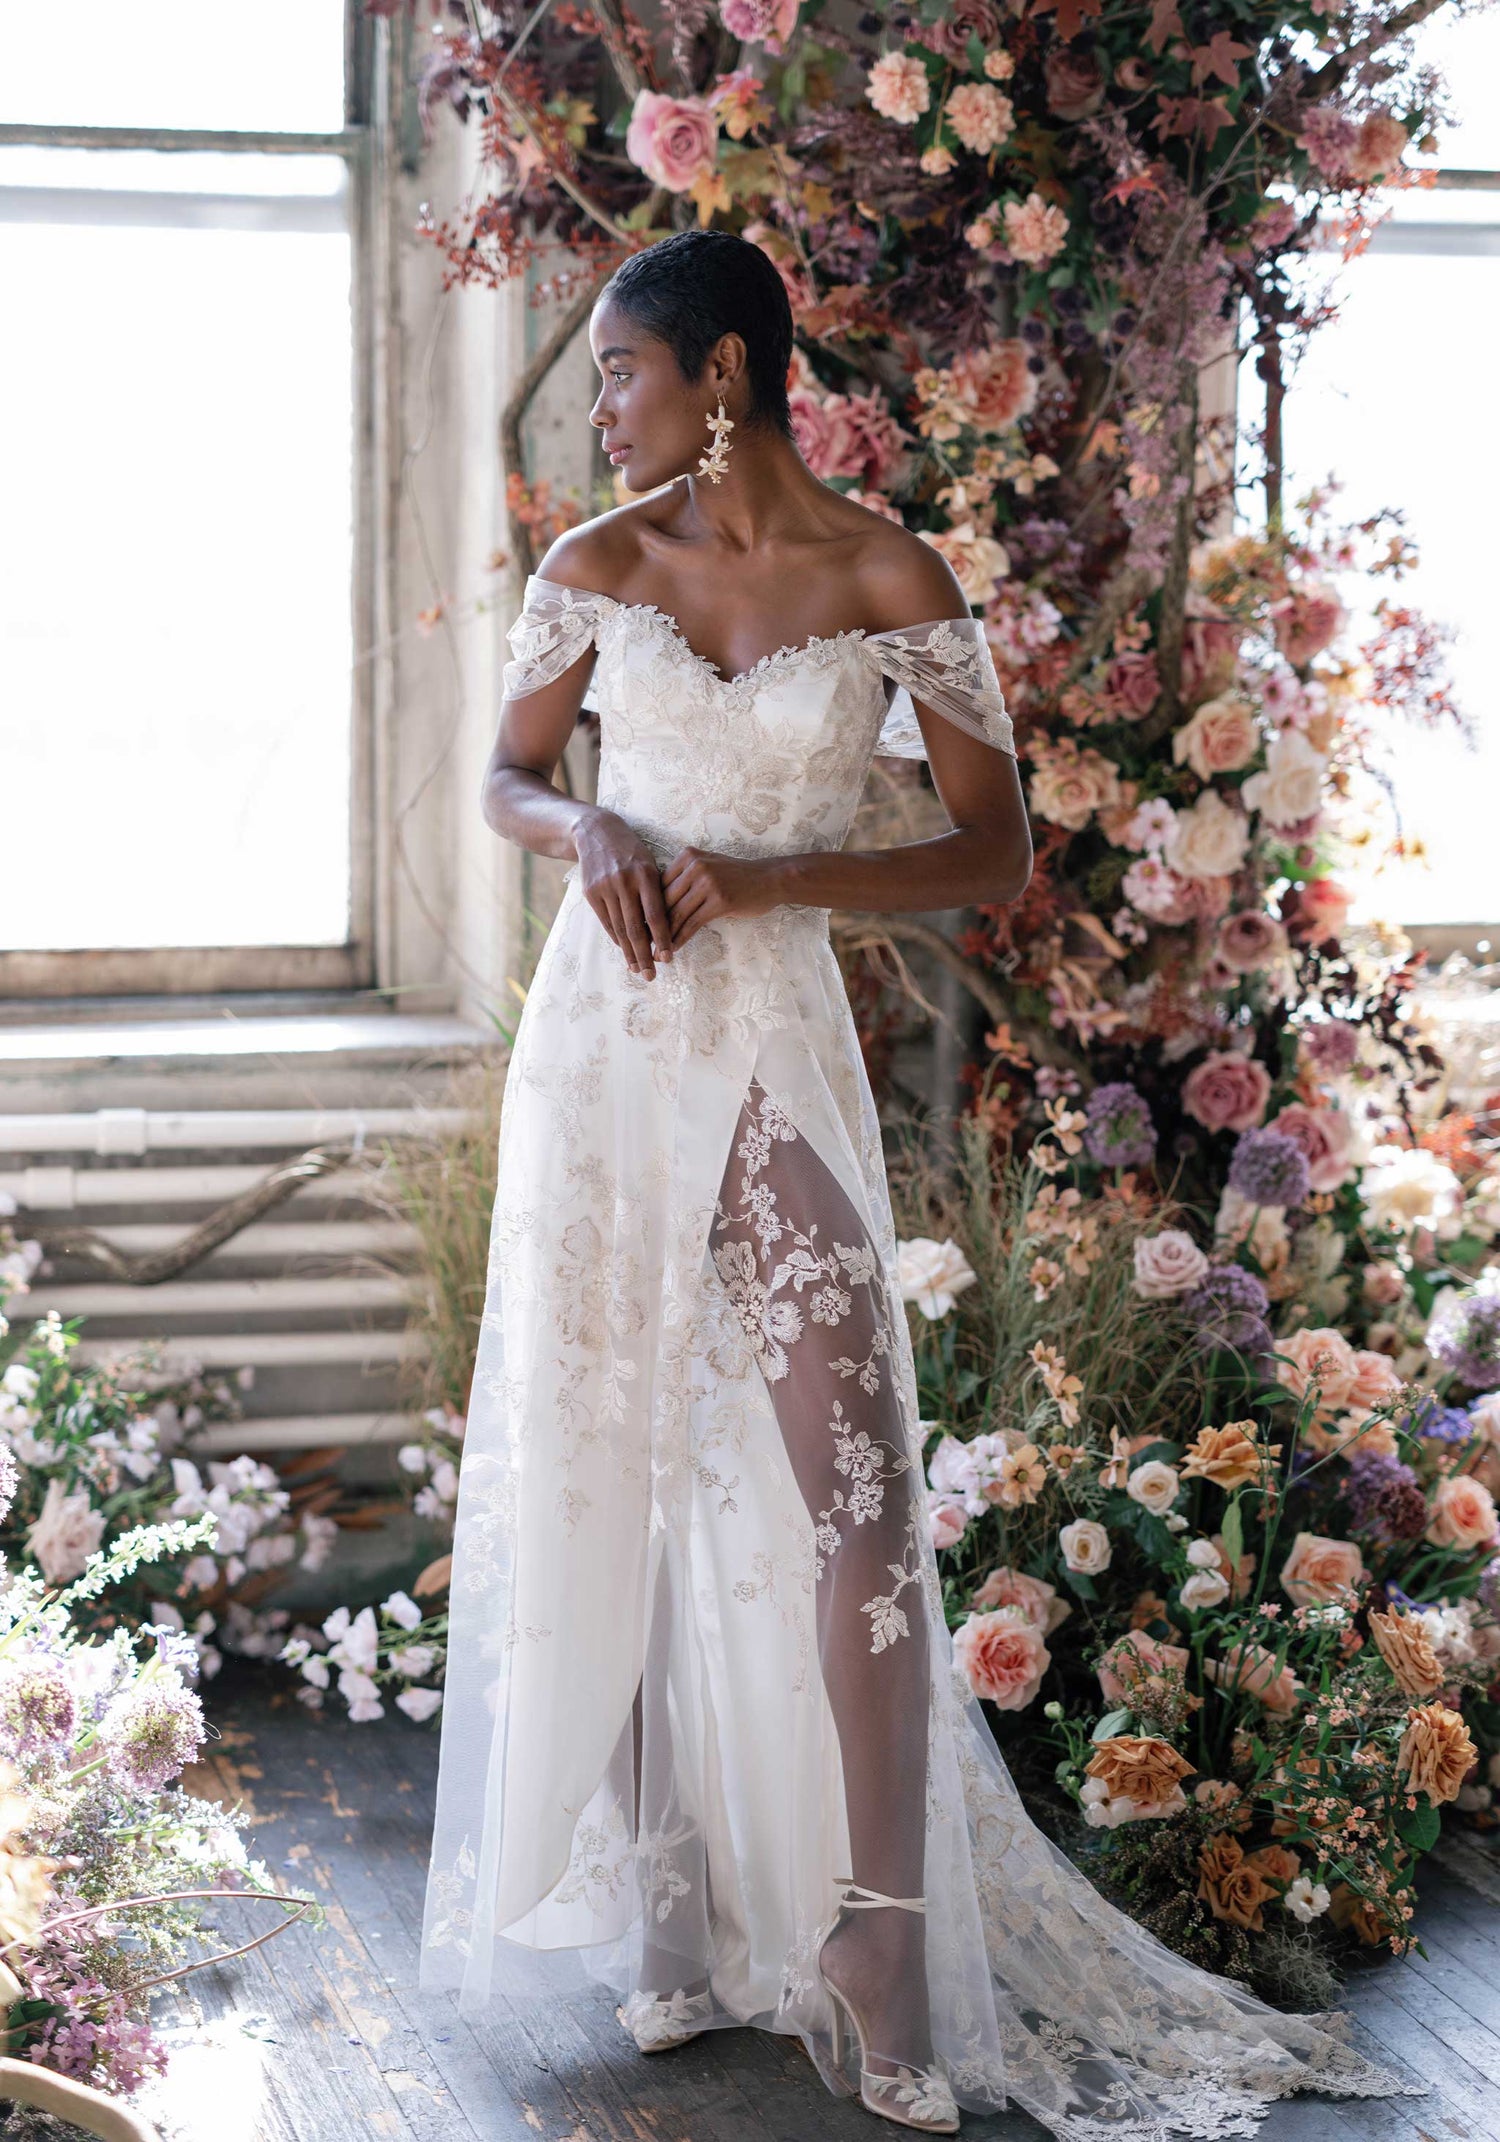 Morganite Floral Wedding Dress with Side slit